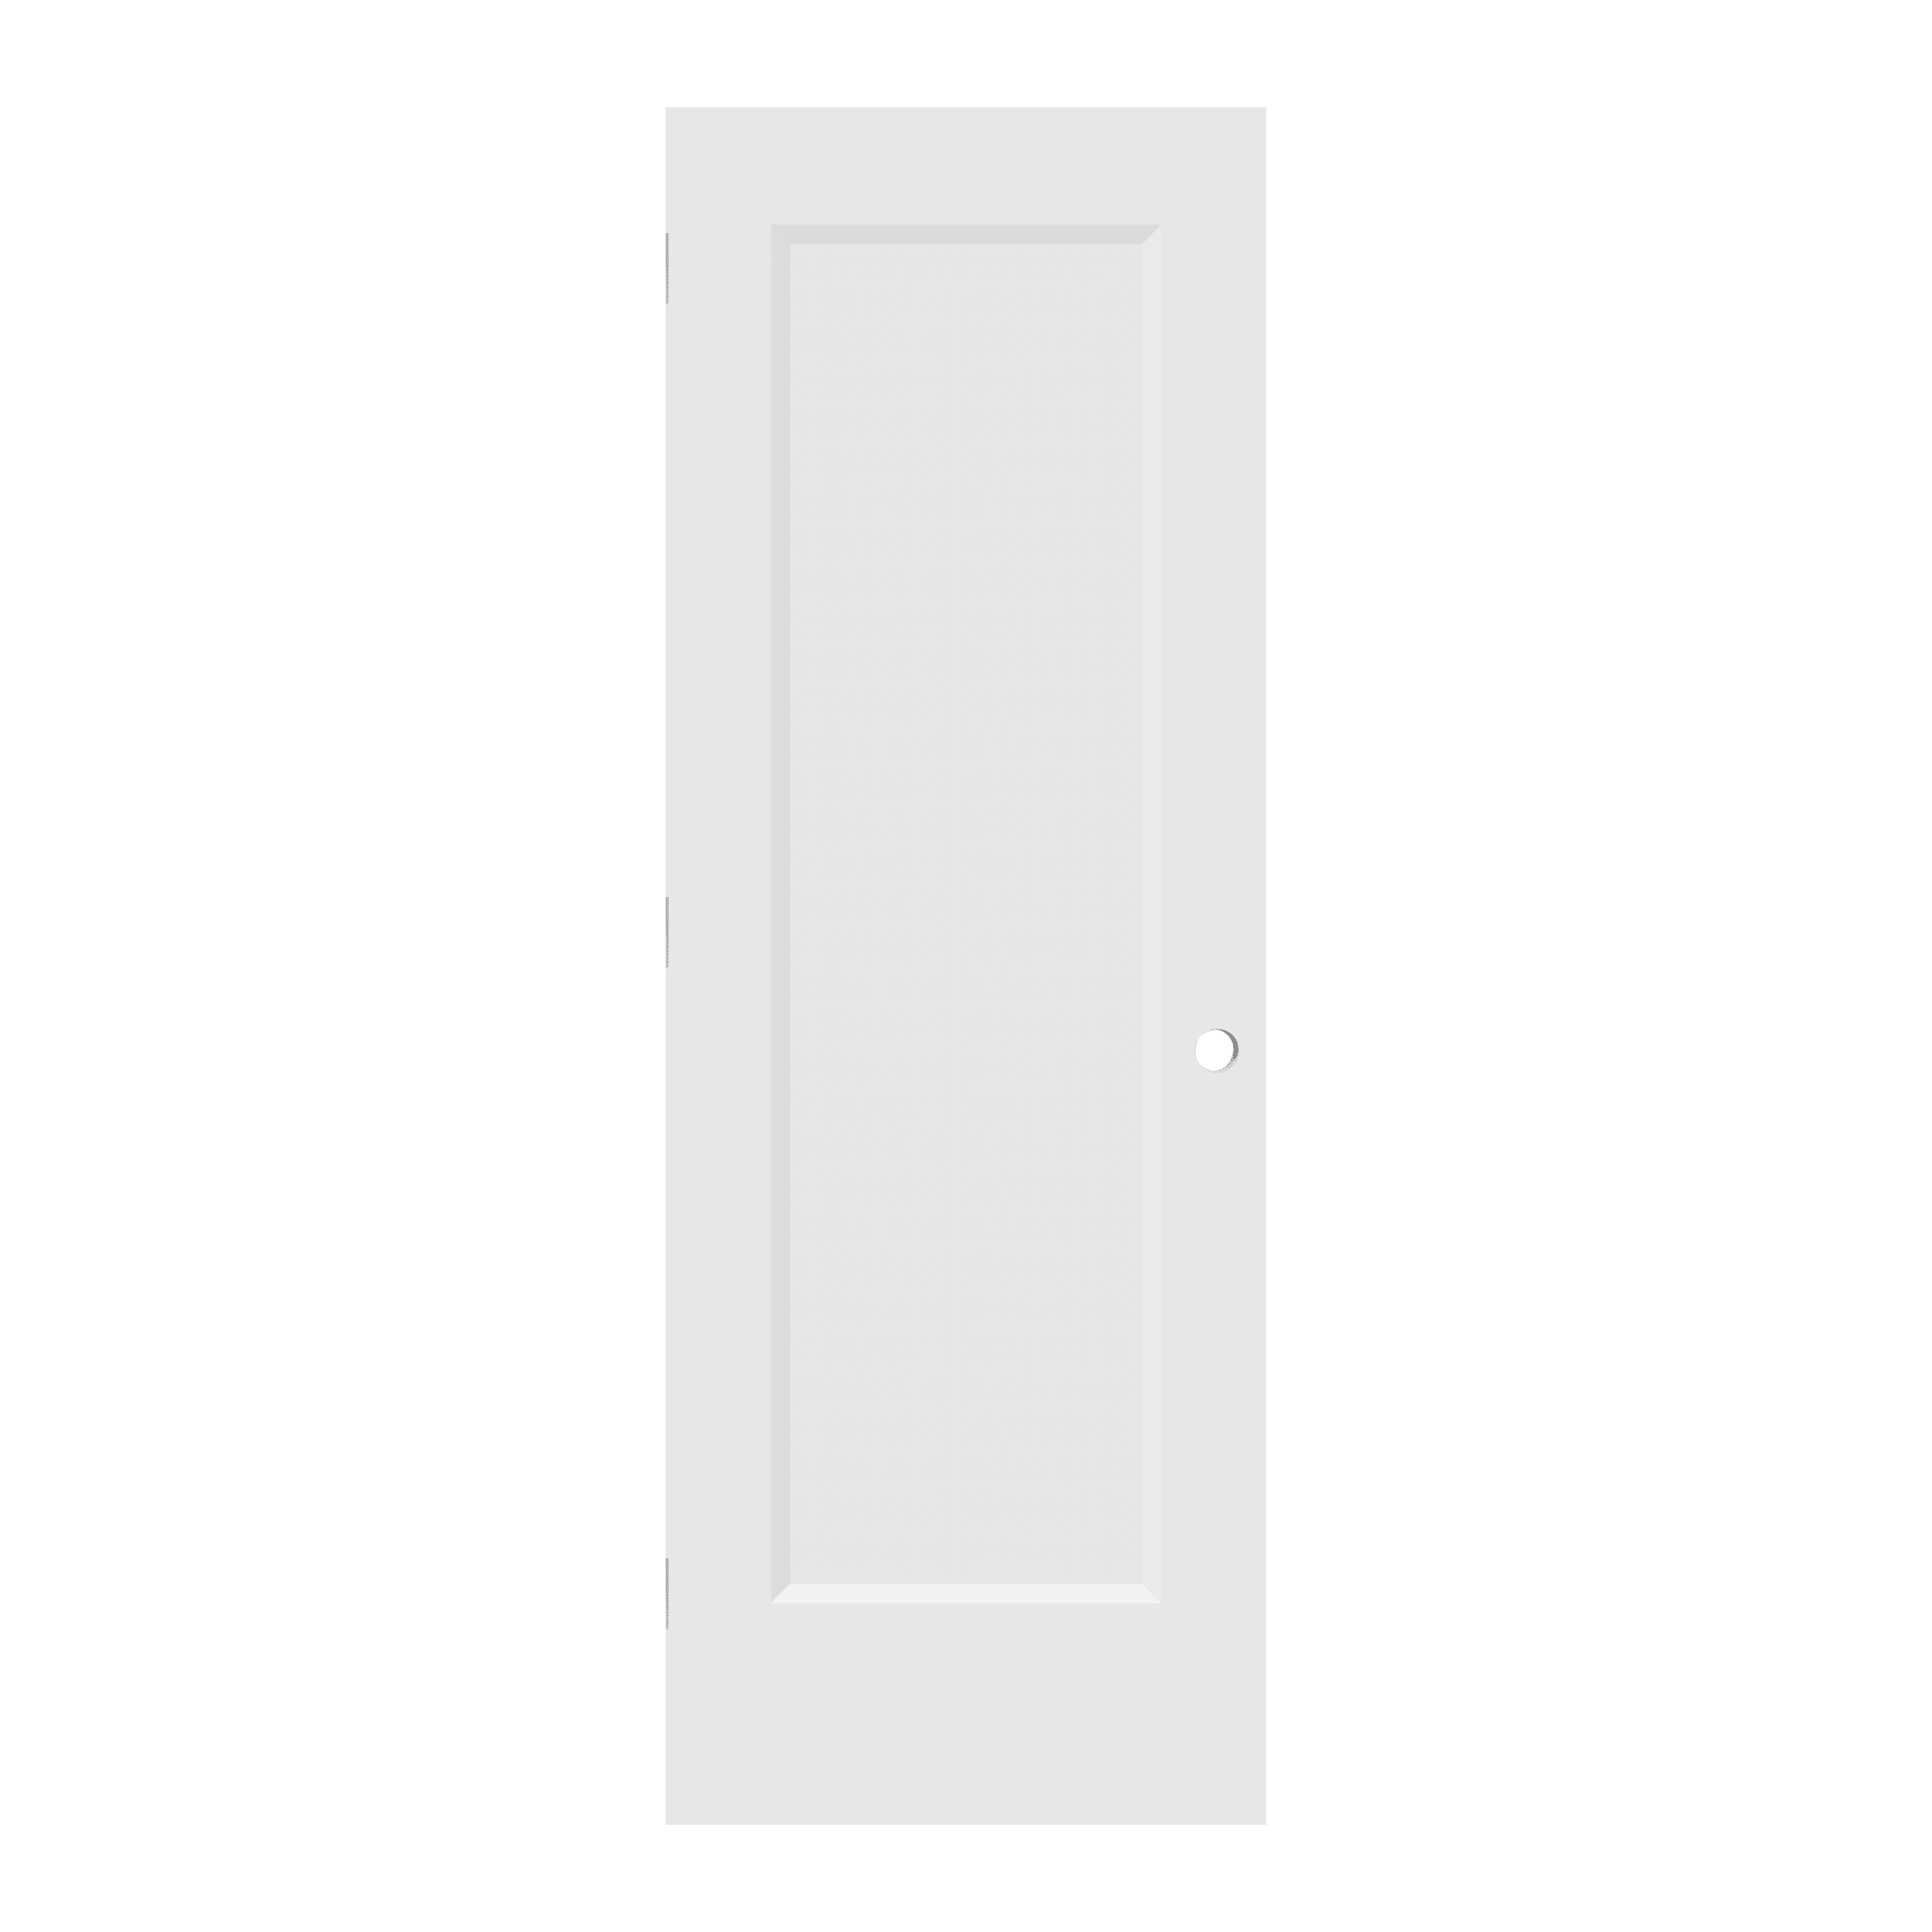 DOOR HINGE FOR PRE MACHINED DOORS 3 1/2" X 3 1/2" BLACK